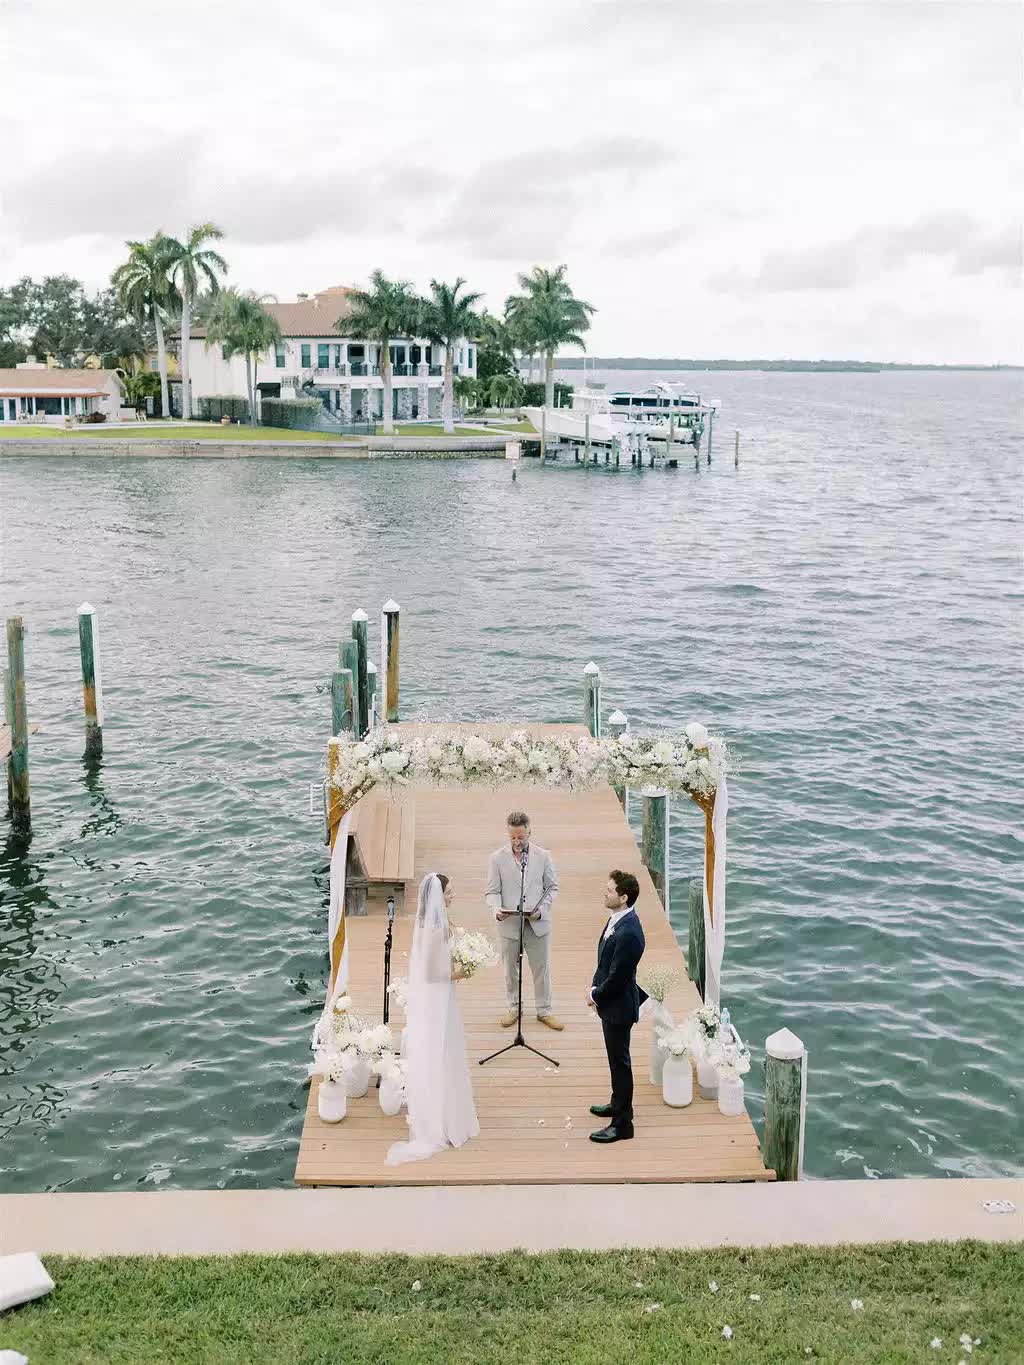 Chọn bờ sông để tổ chức đám cưới, cặp đôi bất ngờ vì đẹp ngoài sức tưởng tượng - Ảnh 6.